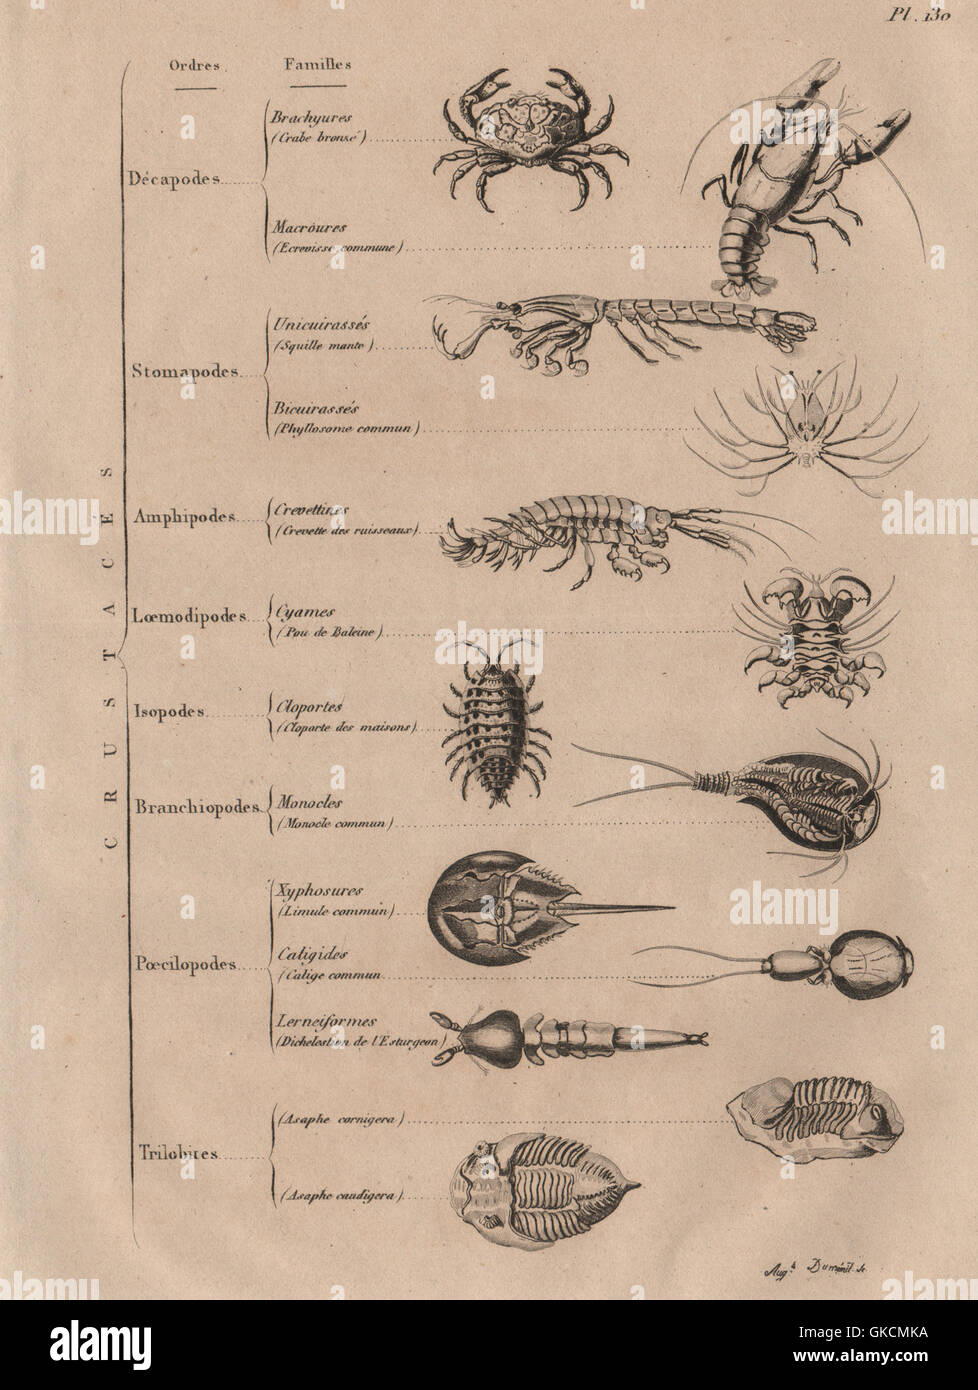 Crostacei: Crustacés (crostacei), antica stampa 1834 Foto Stock